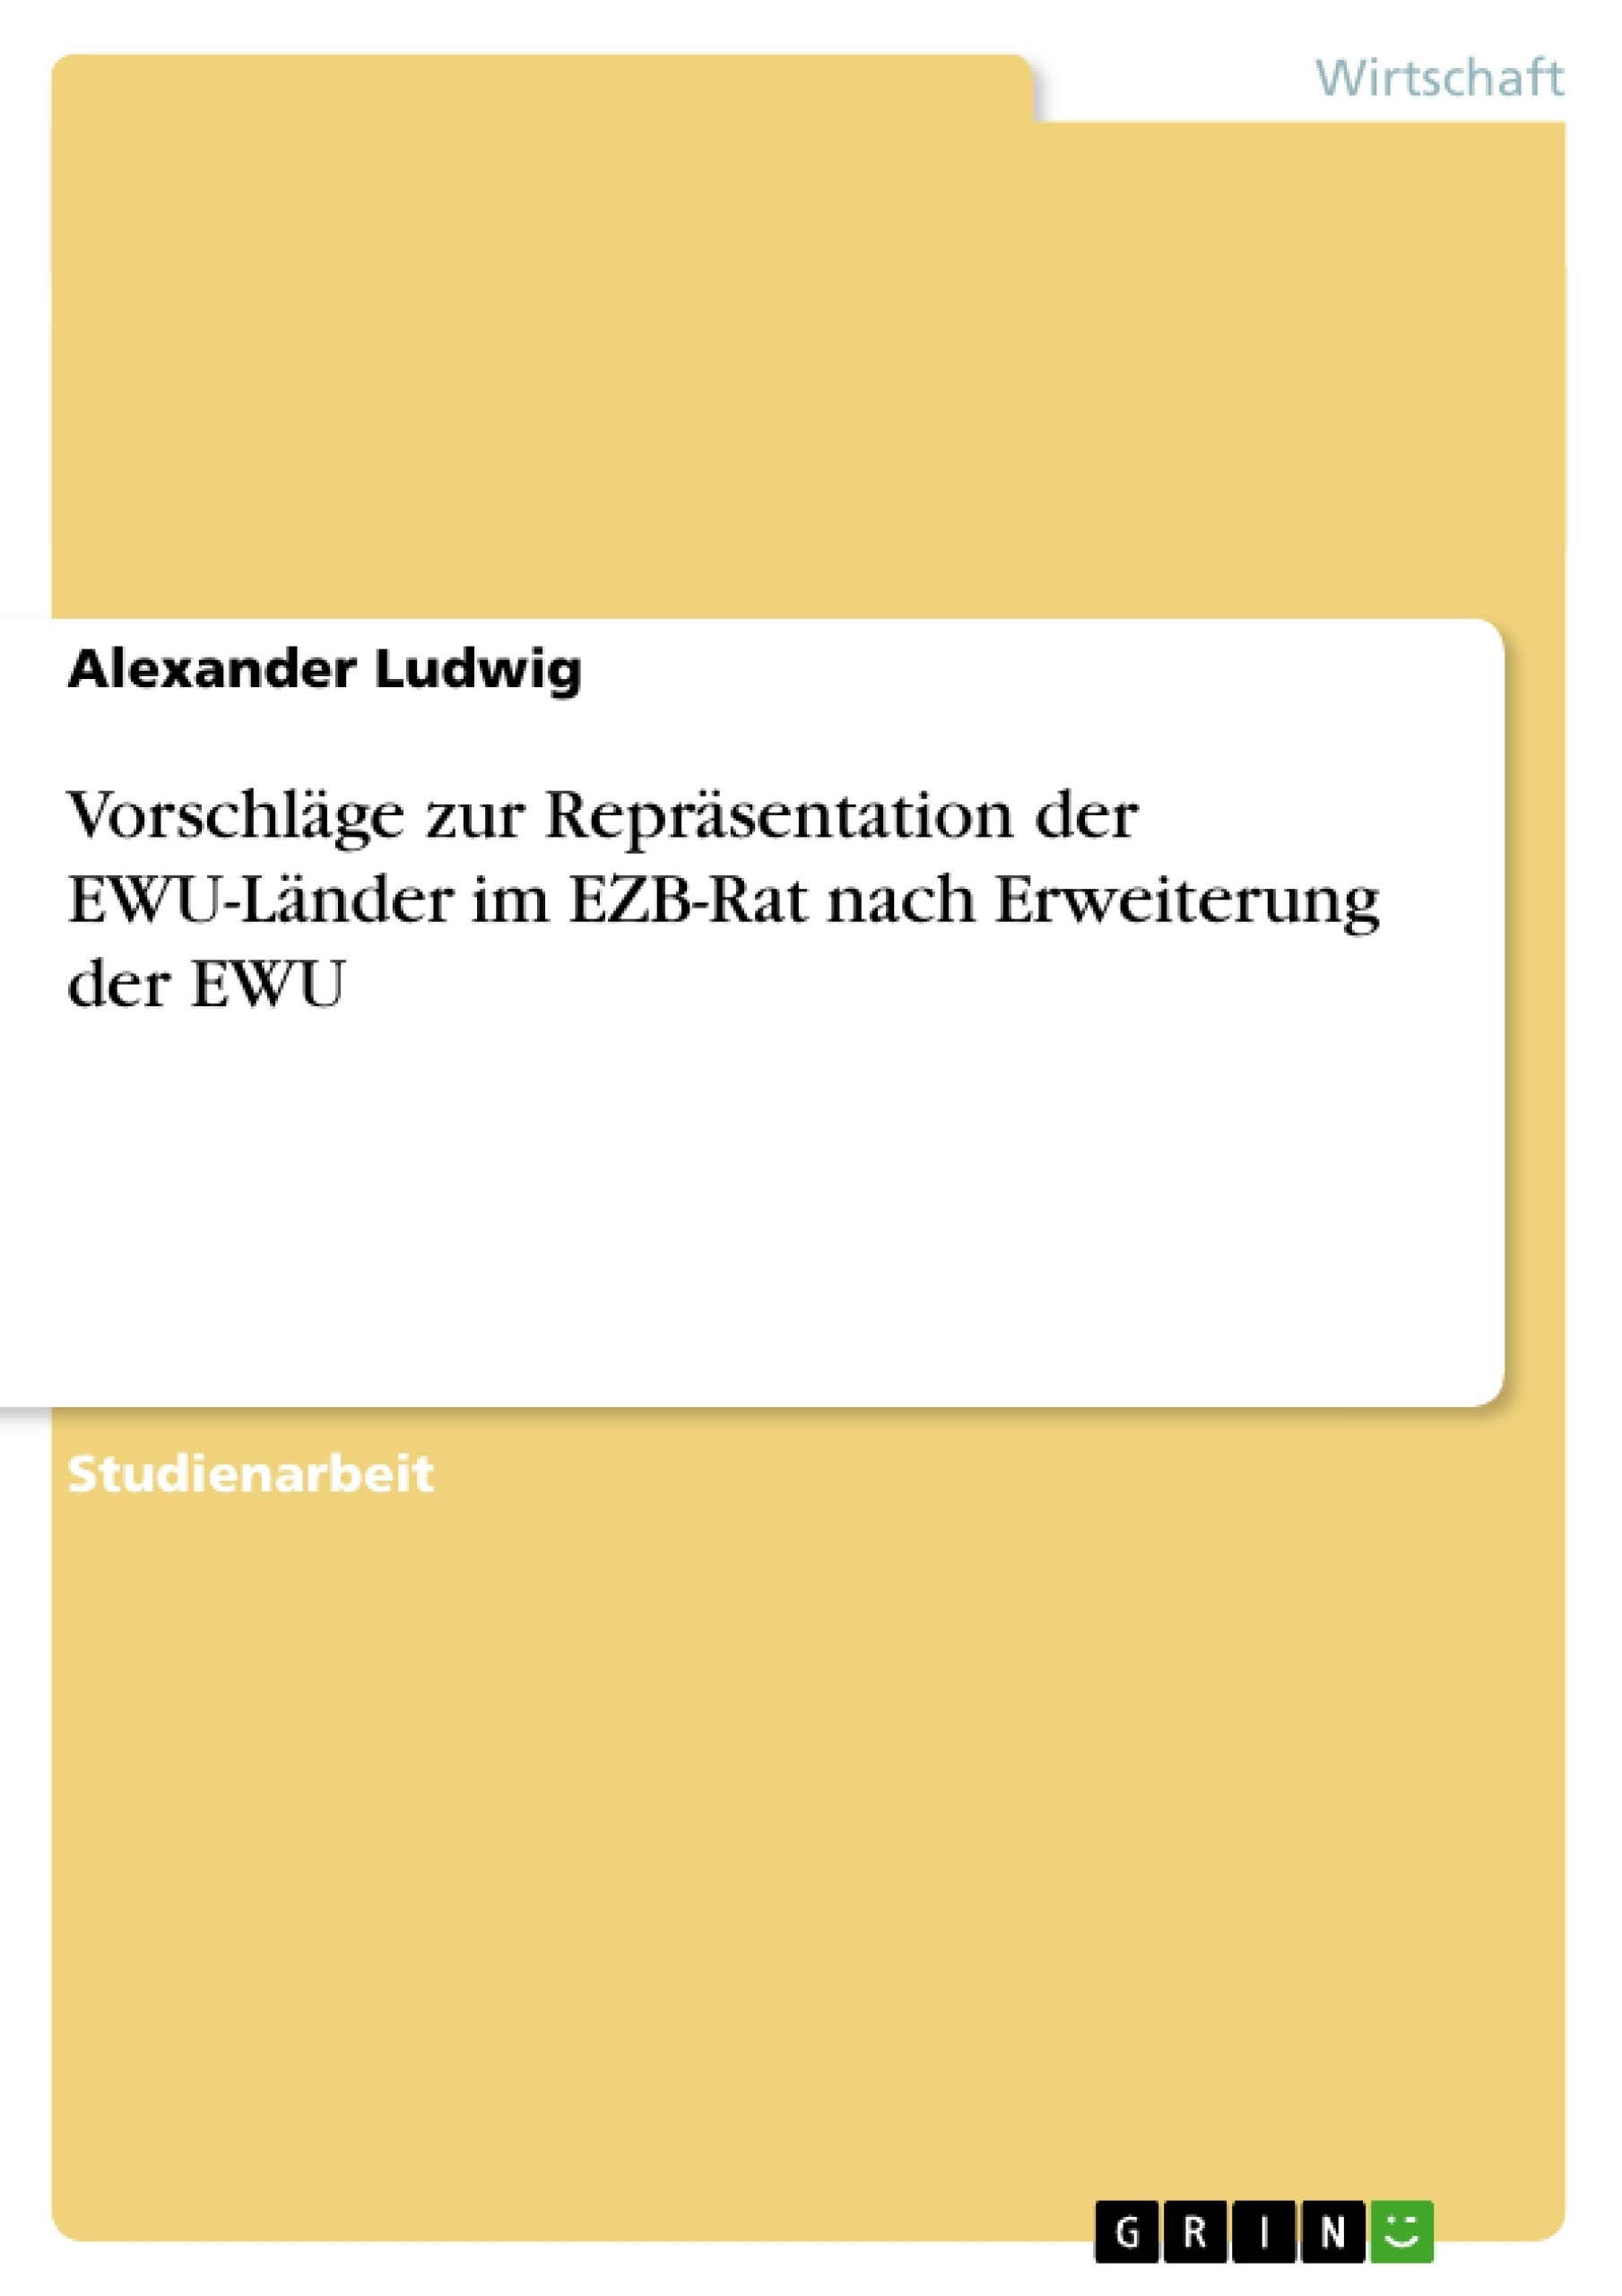 Título: Vorschläge zur Repräsentation der EWU-Länder im EZB-Rat nach Erweiterung der EWU